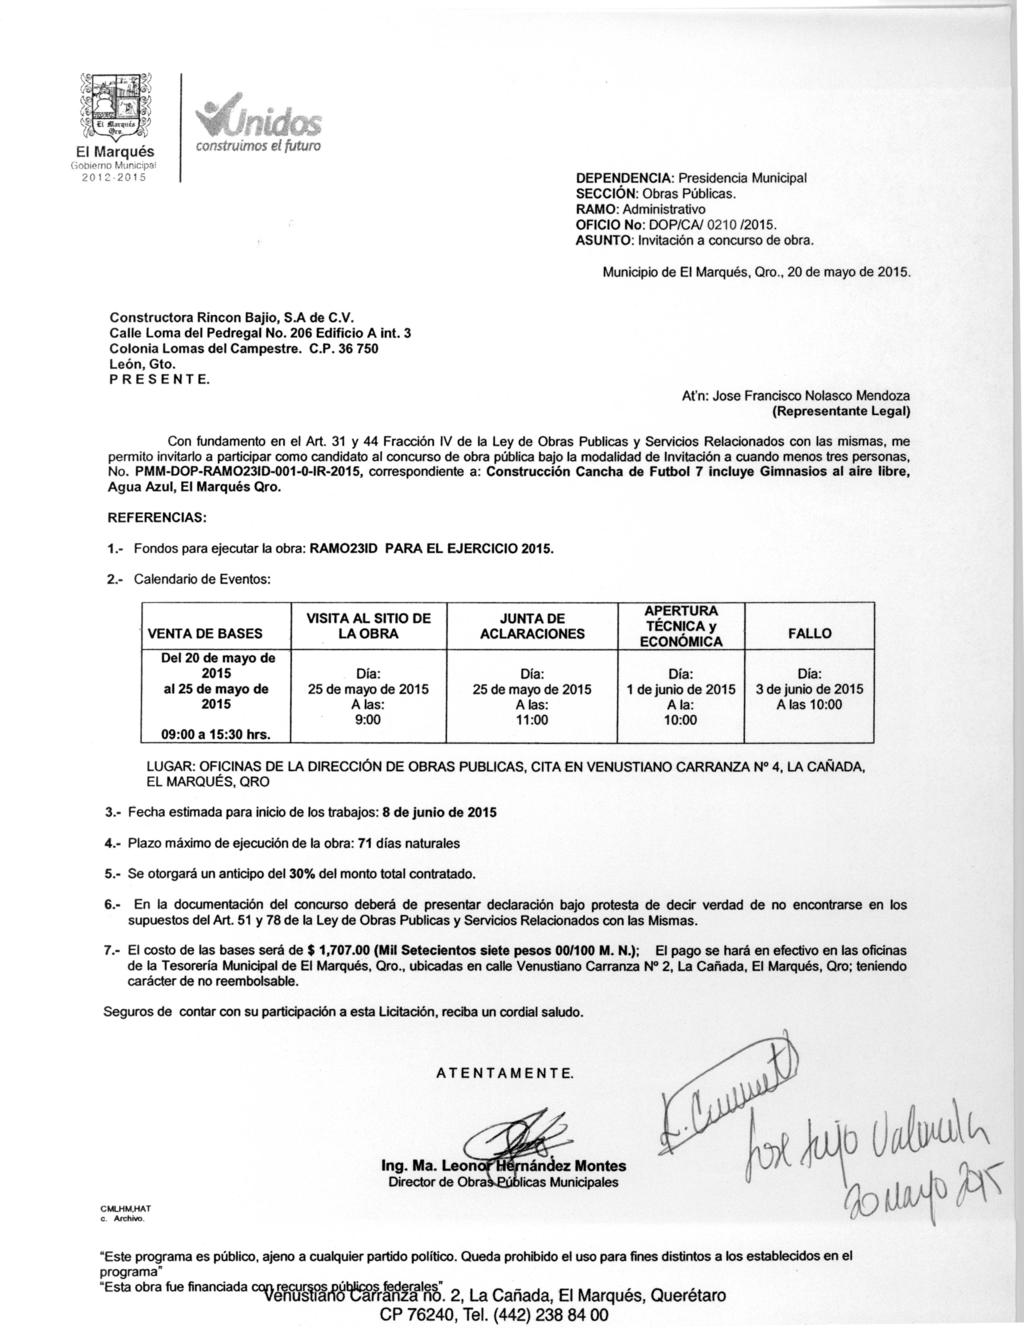 El Marqués construimos el futuro Gobierno Municipal 2012- DEPENDENCIA: Presidencia Municipal SECCIÓN: Obras Públicas. RAMO: Administrativo OFICIO No: DOP/CA/ 0210 /.